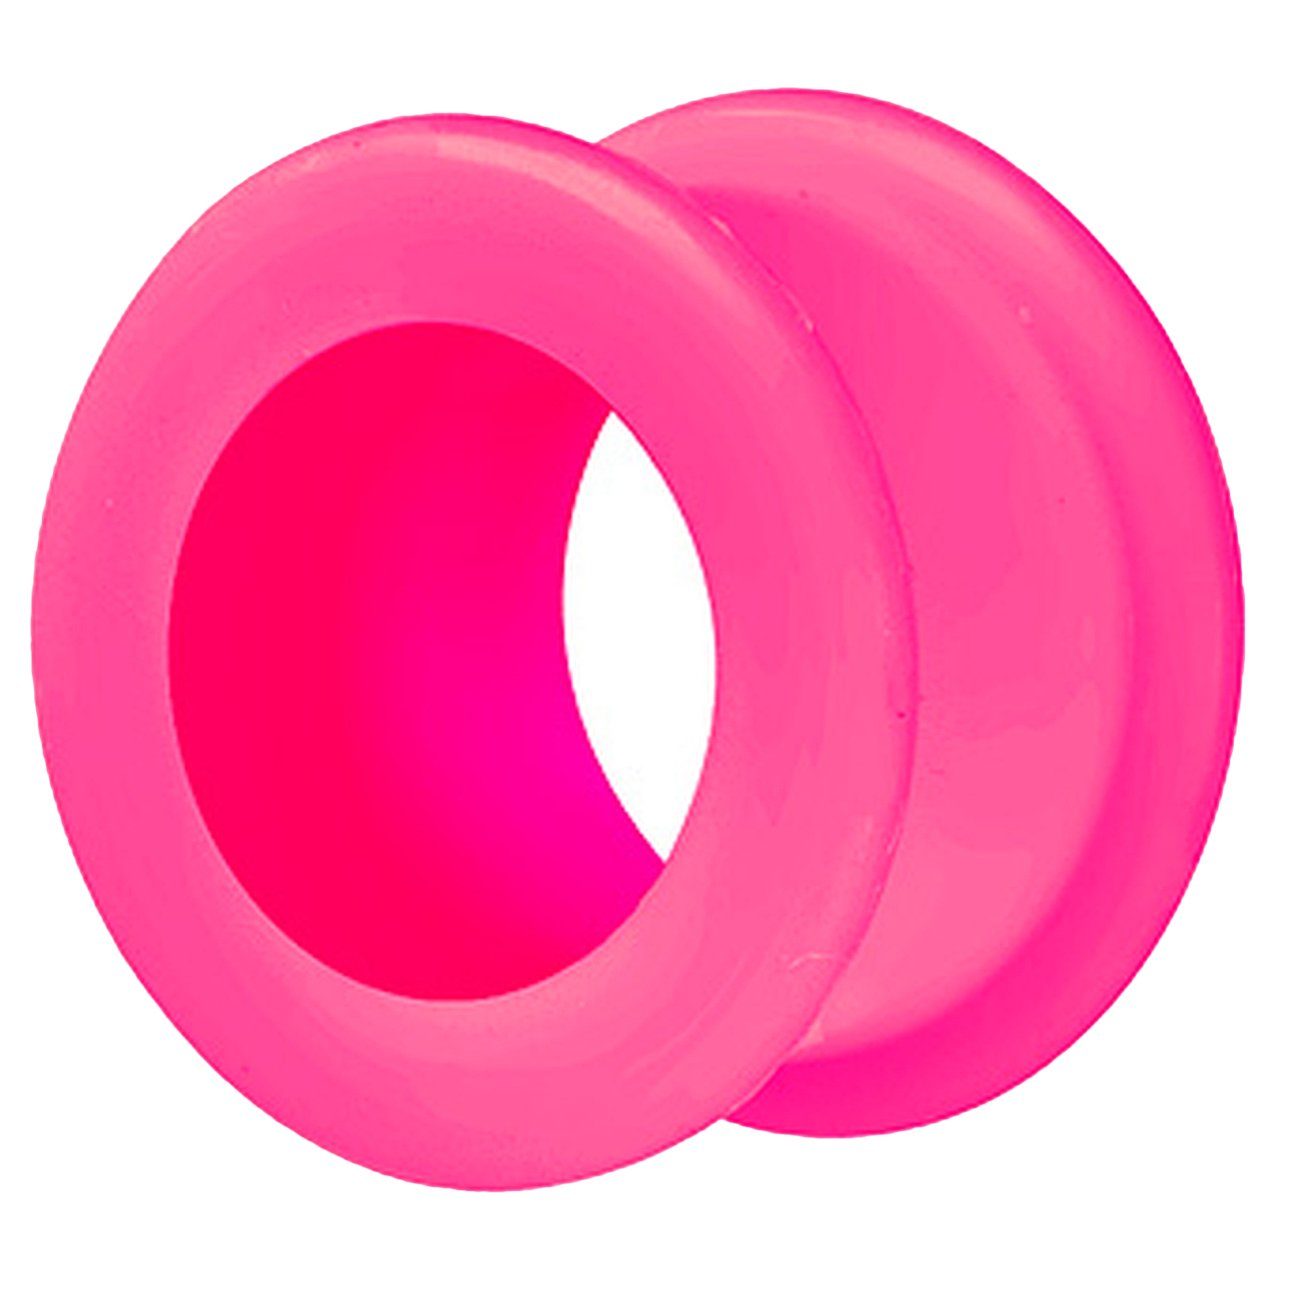 Taffstyle Plug Piercing Tunnel Silikon Flesh XXL Rund Double Extra Flexibel, Ohr Ear Big Plug Farbiger Pink Flared Creole Weich Flared